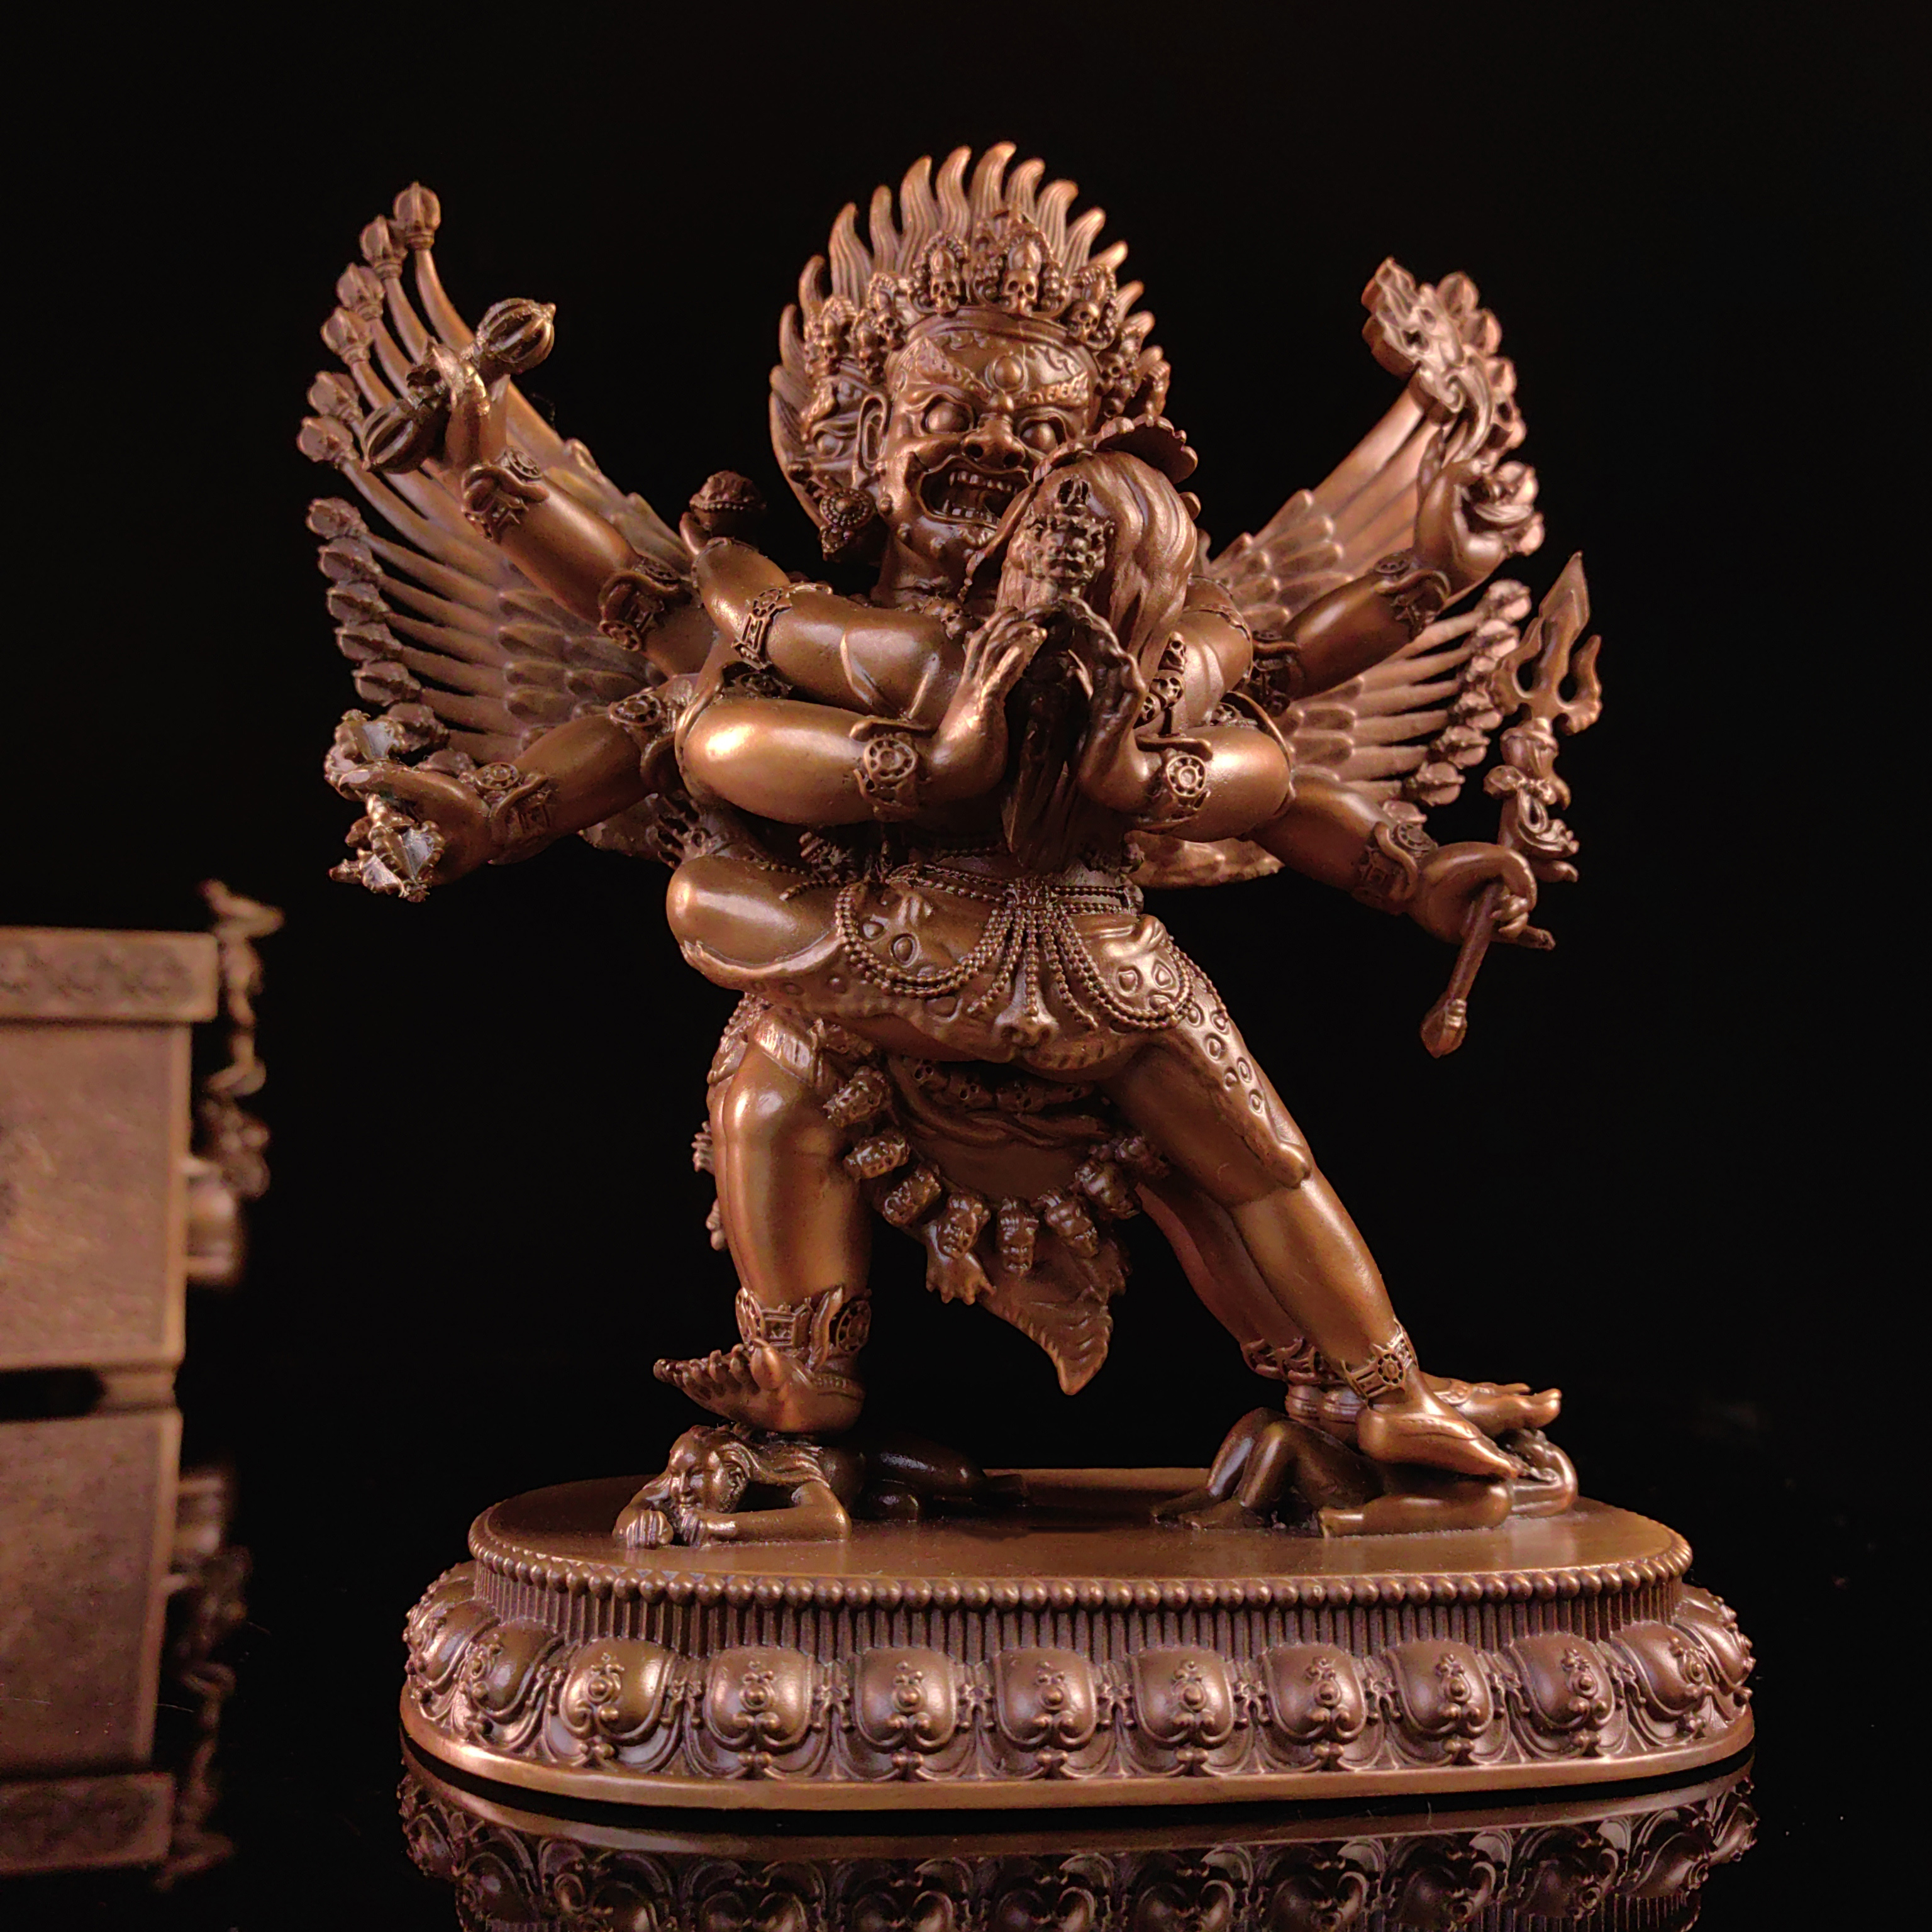 普巴金刚藏传佛像铜造像工艺品家用摆件供奉可定制